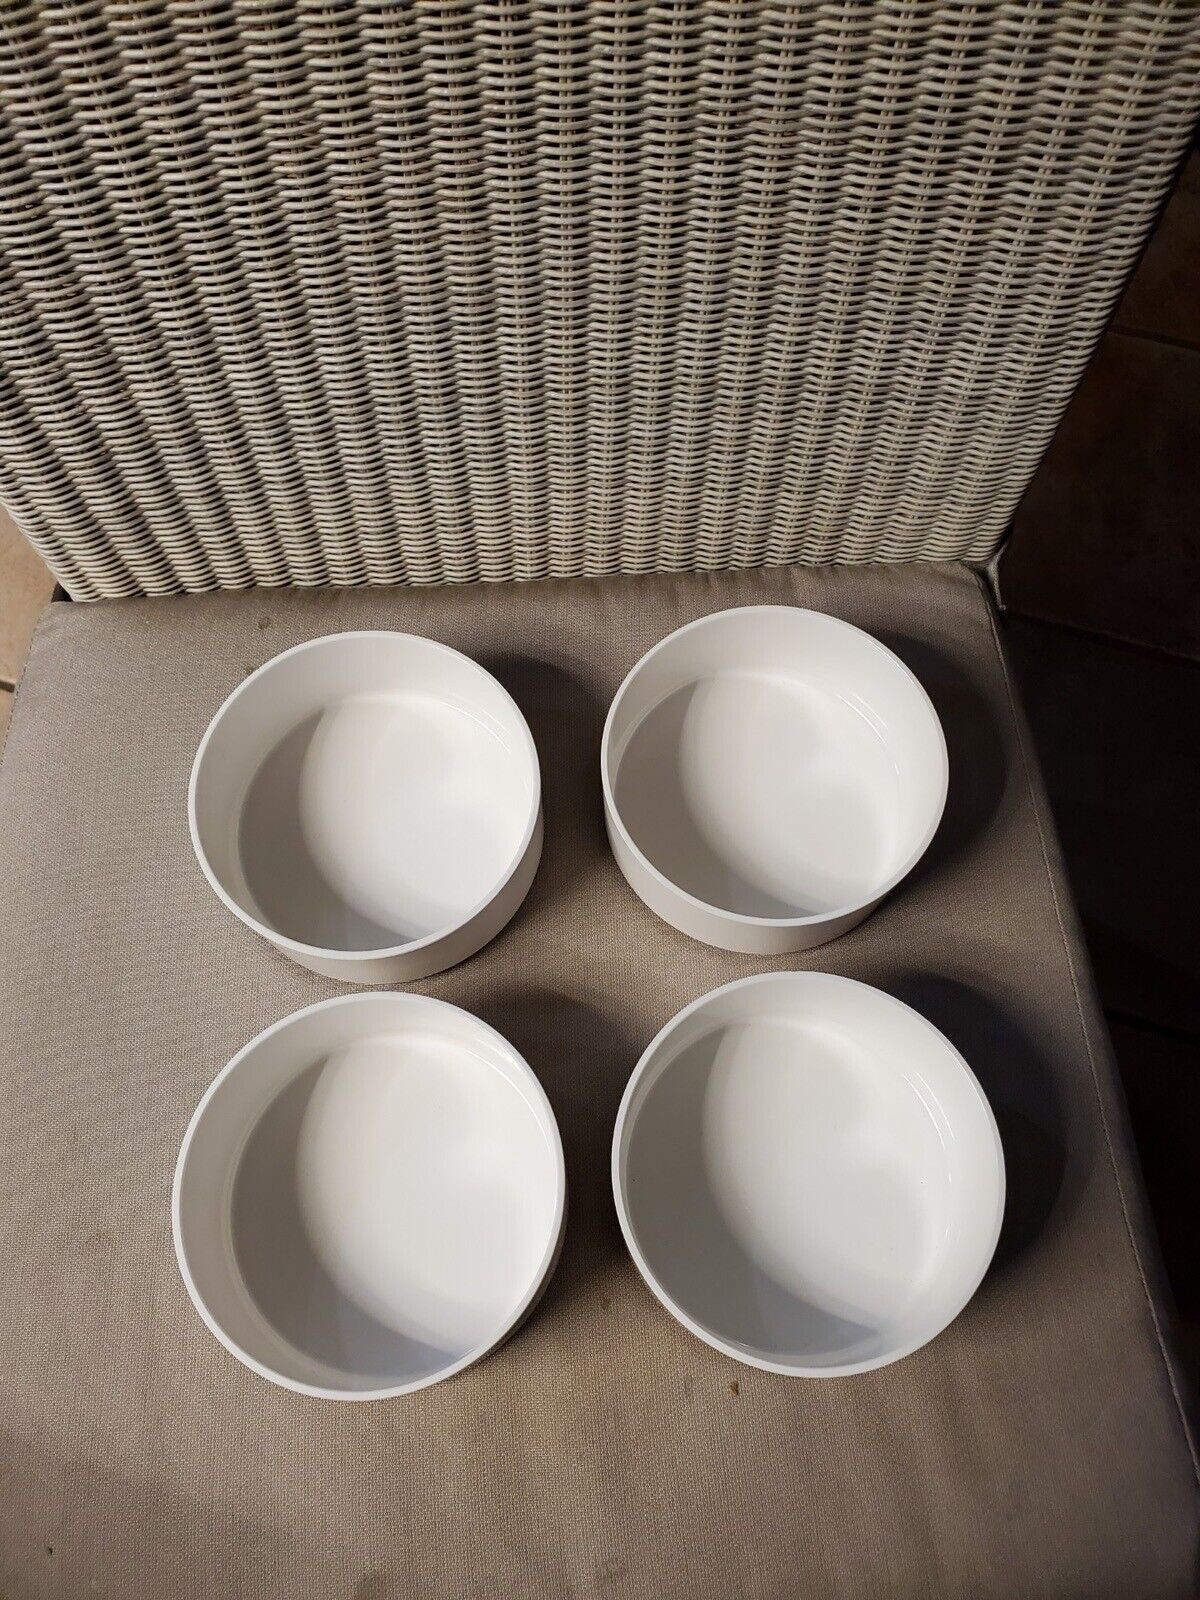 Vintage 4 HELLER Massimo Vignelli 5” Nesting Cereal Soup Bowls MCM White